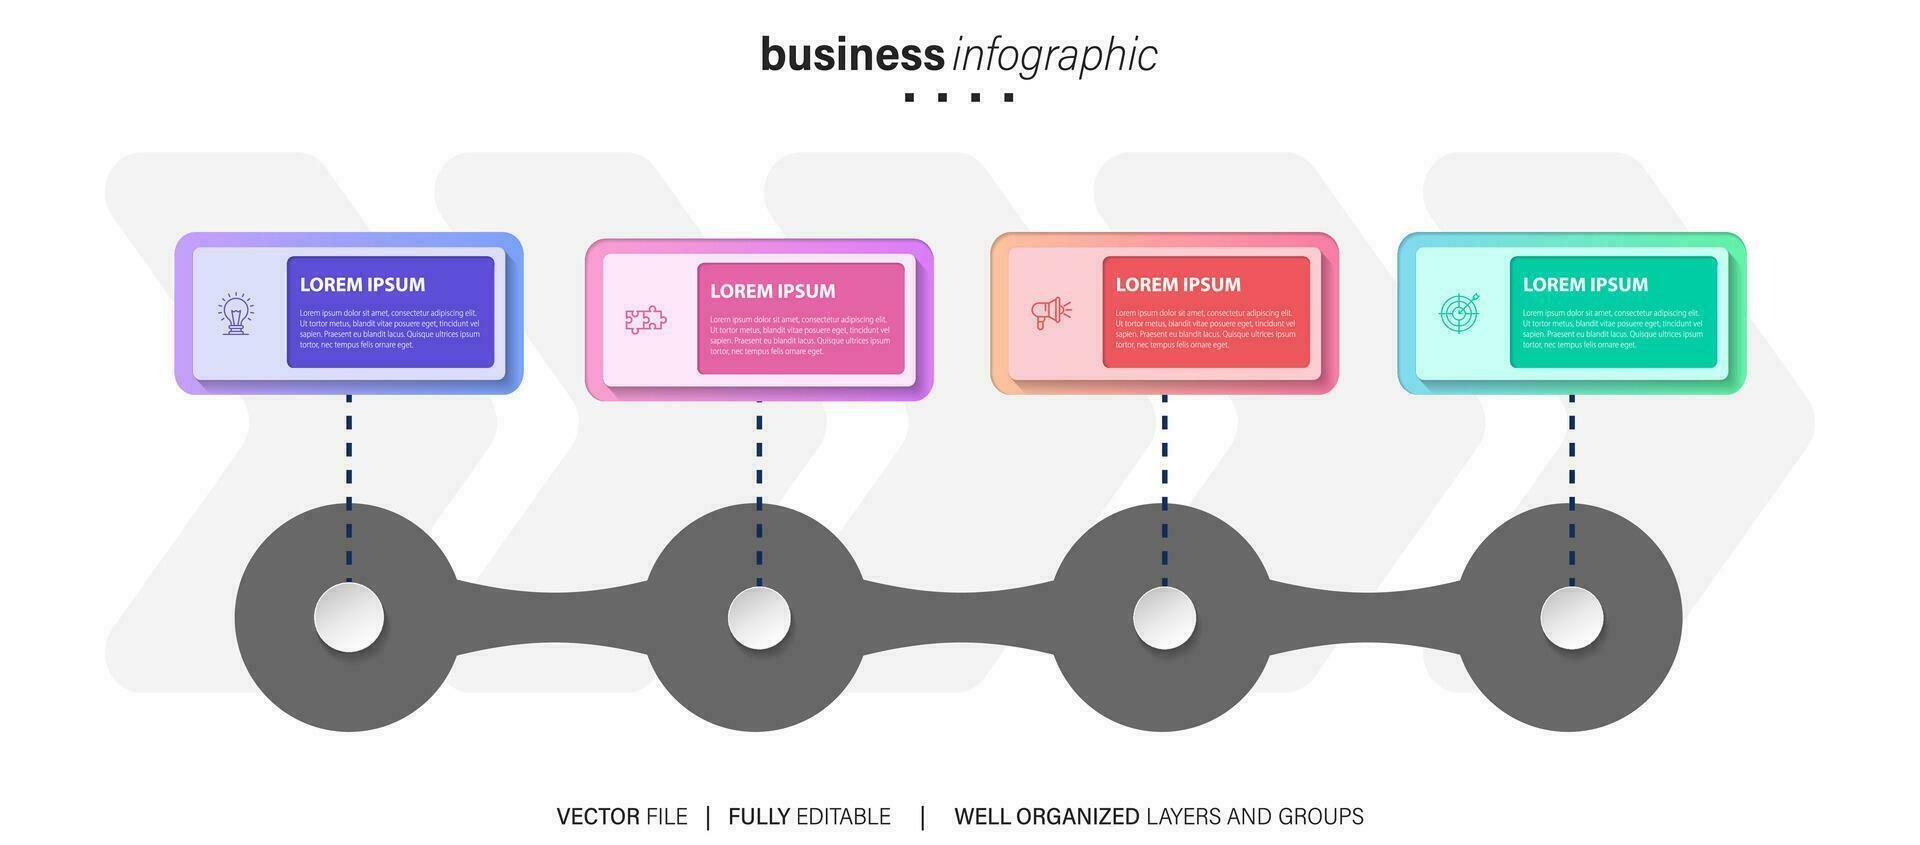 företag infographics mall.tidslinje med 4 steg, cirklar, alternativ och marknadsföring ikoner. vektor linjär infographic element.